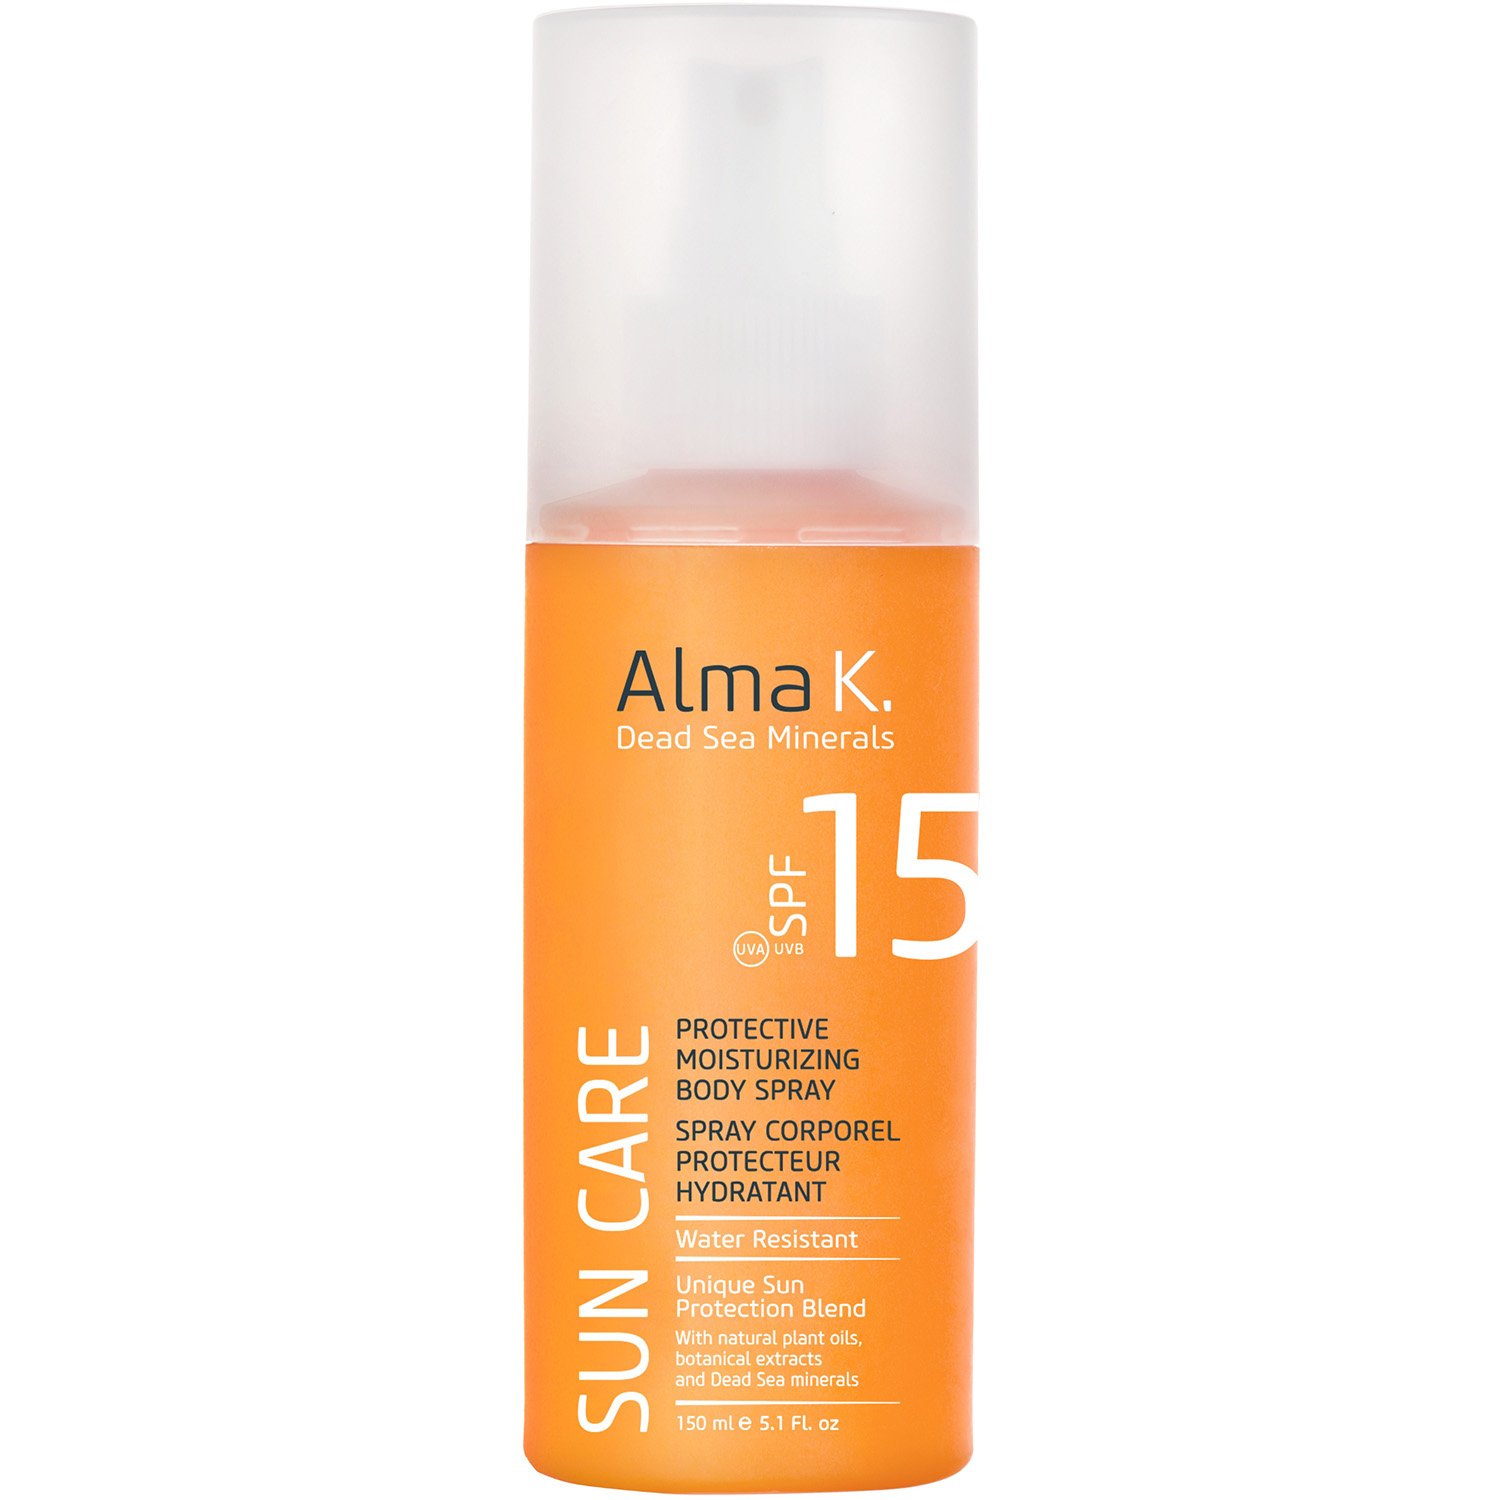 Сонцезахисний спрей для тіла Alma K Sun Care Protective Moisturizing Body Spray SPF 15, 150 мл (121593) - фото 1